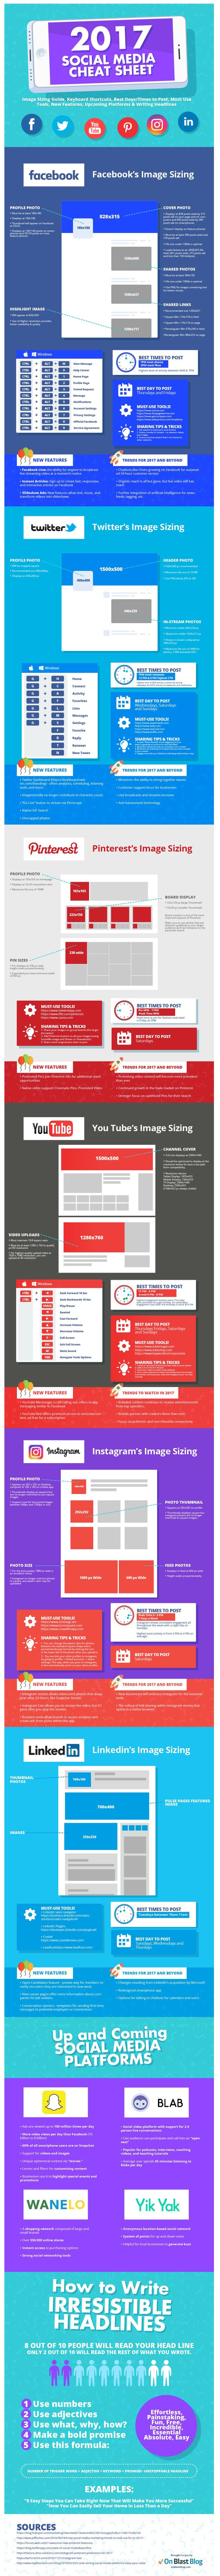 social media infographic social media cheat sheet